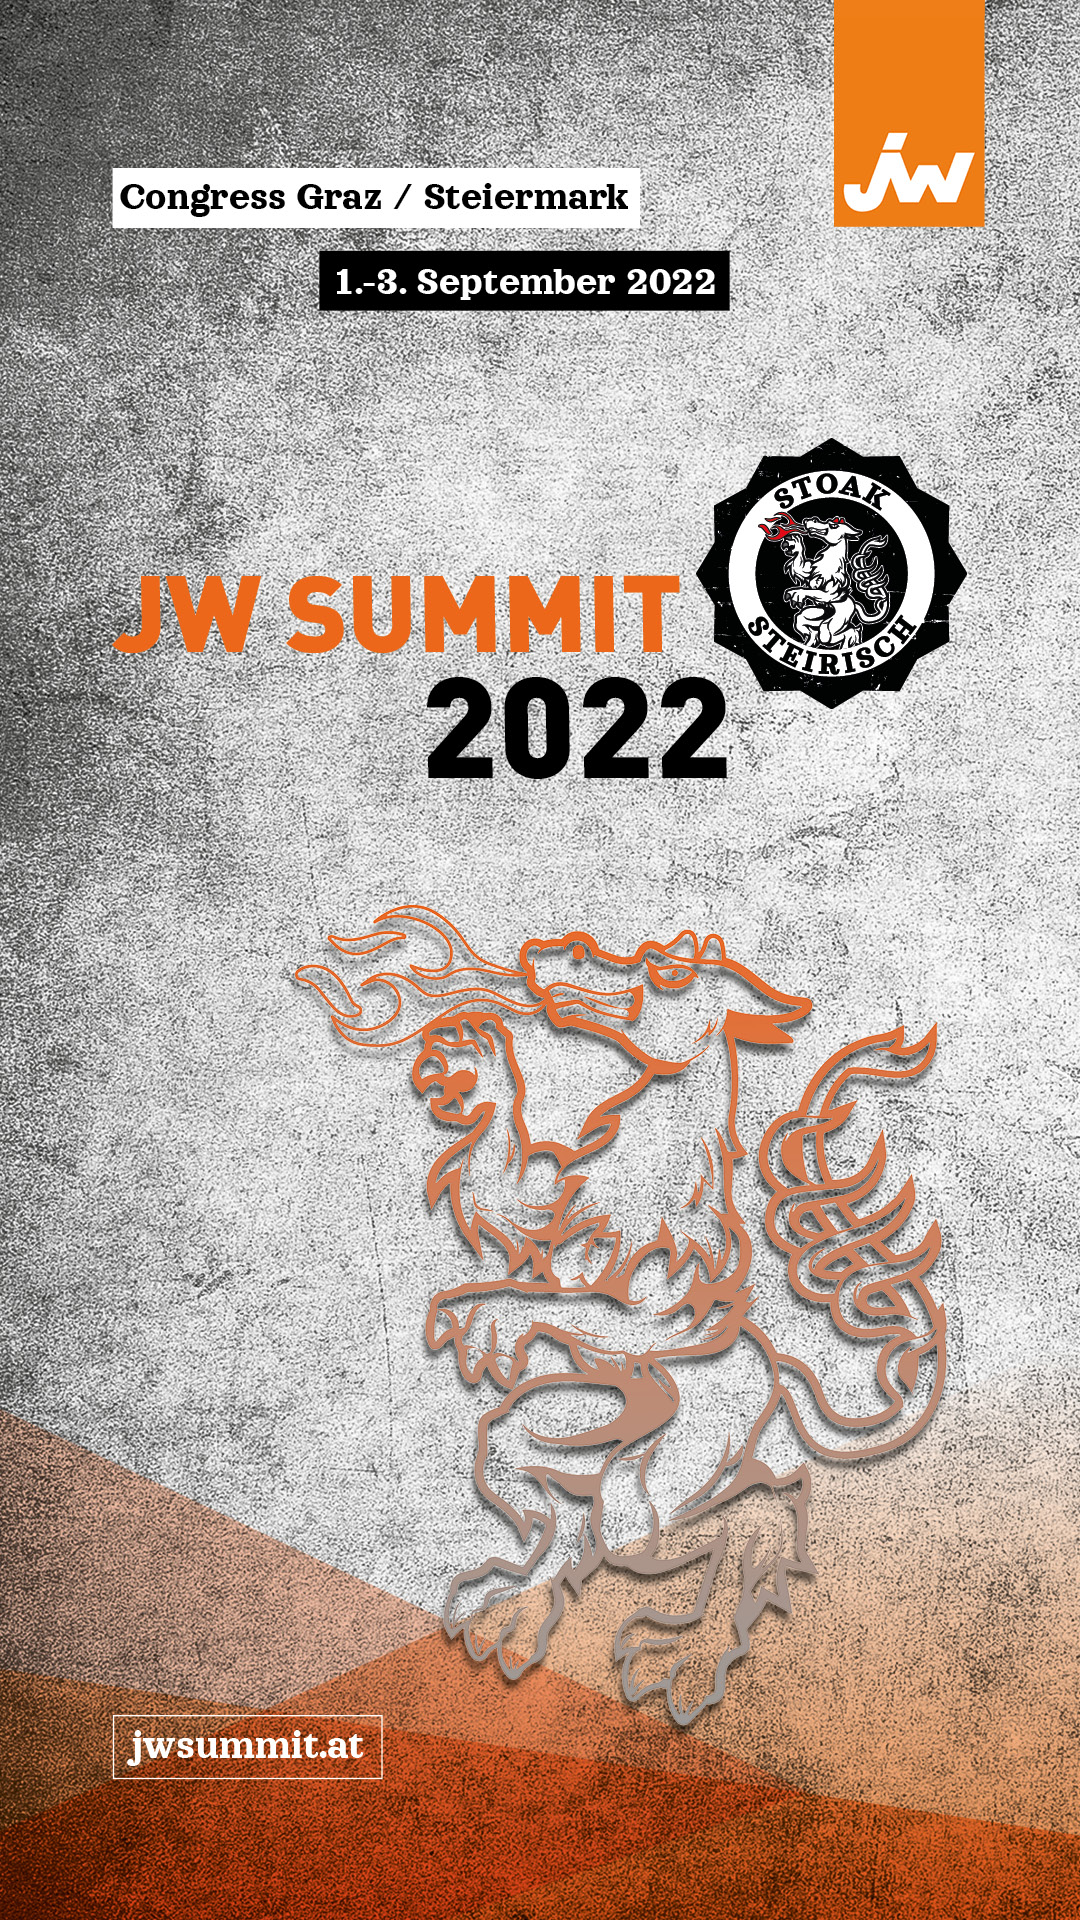 JW Summit vom 2. bis 3. September 2022 live in Graz